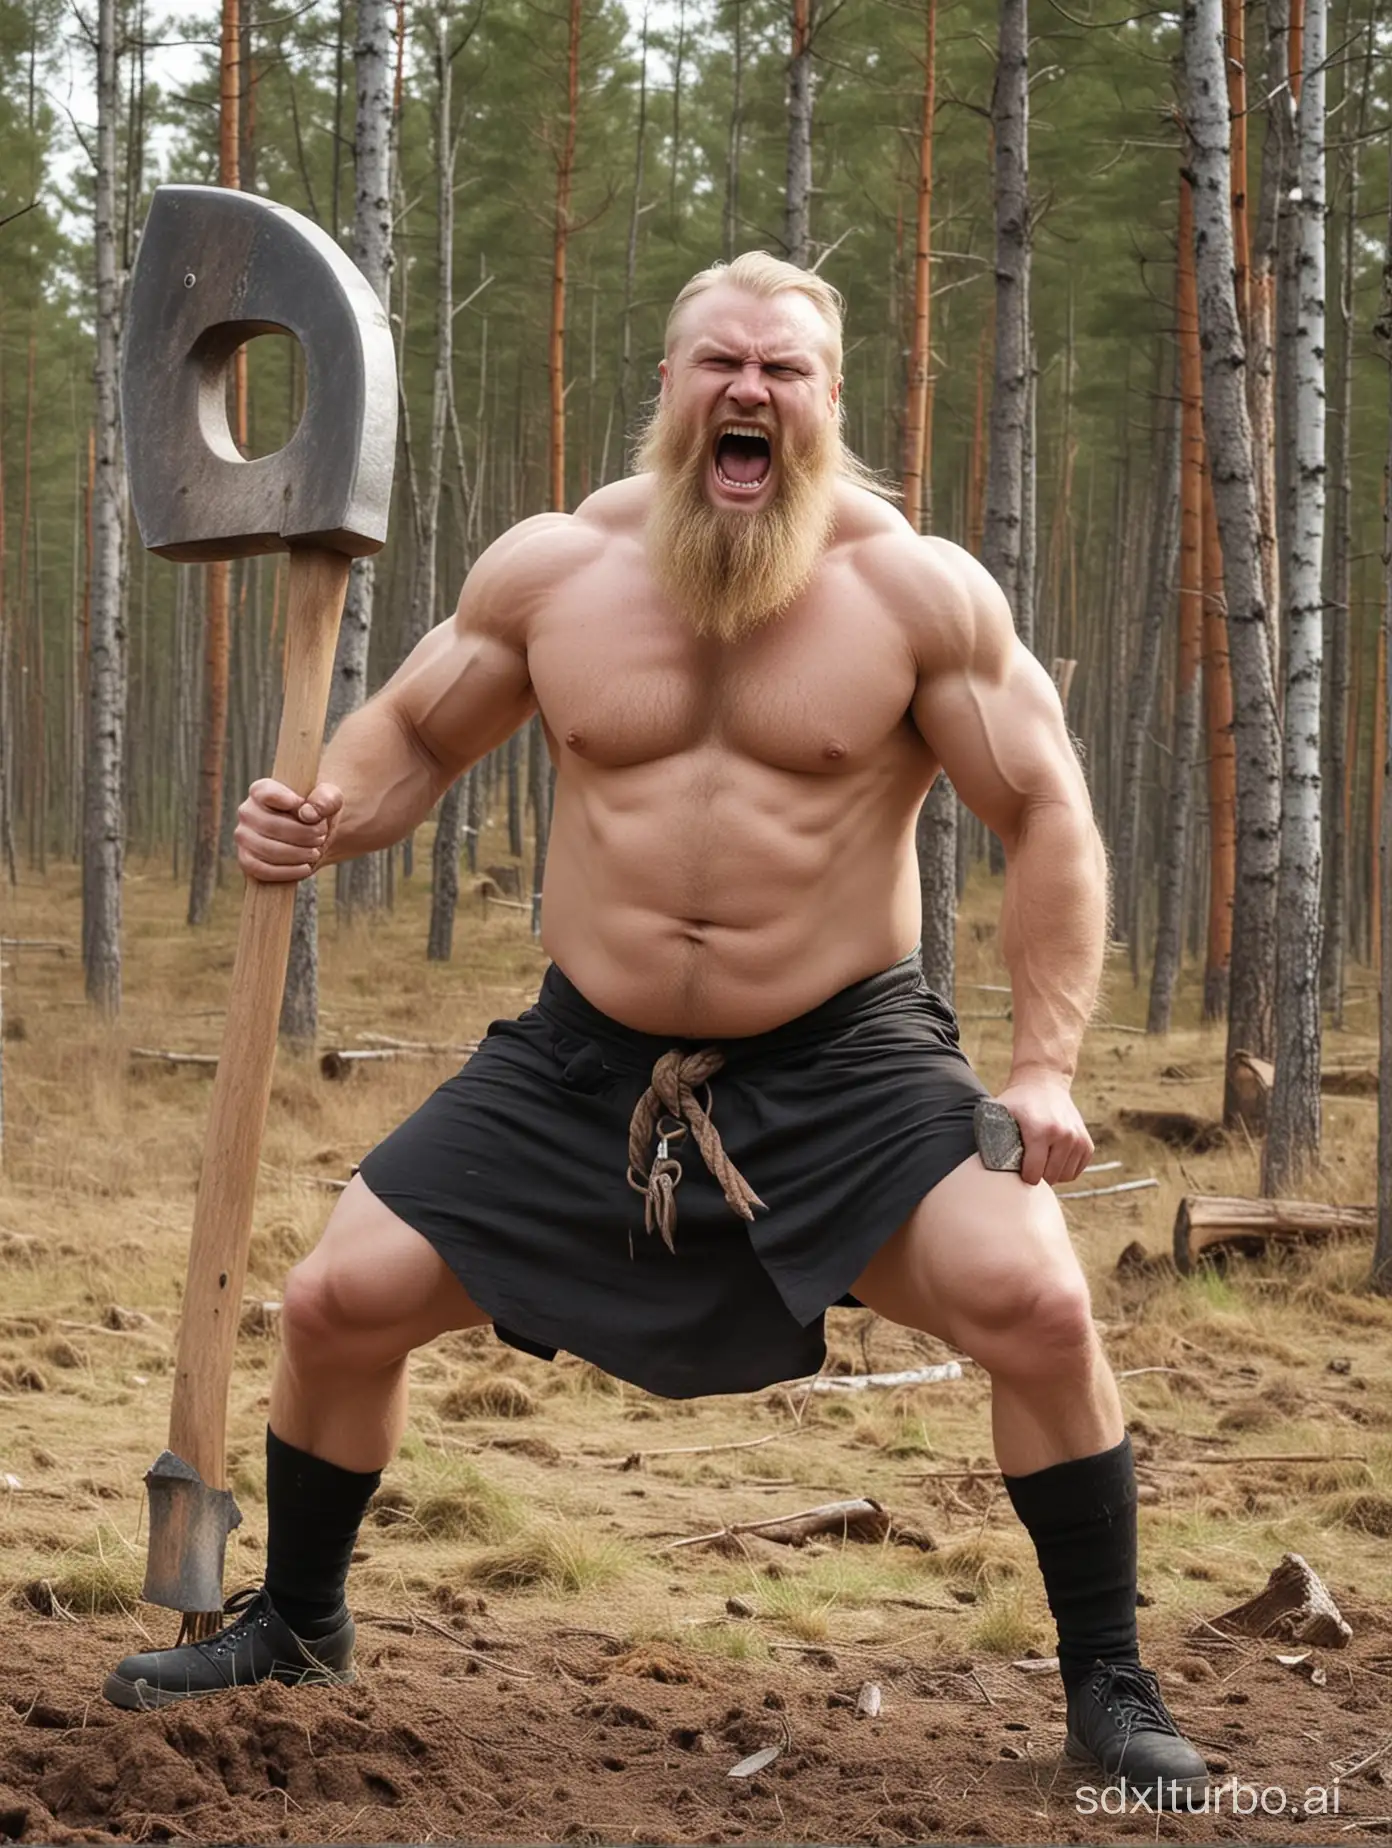 Crazy Finnish berzerk with a big axe